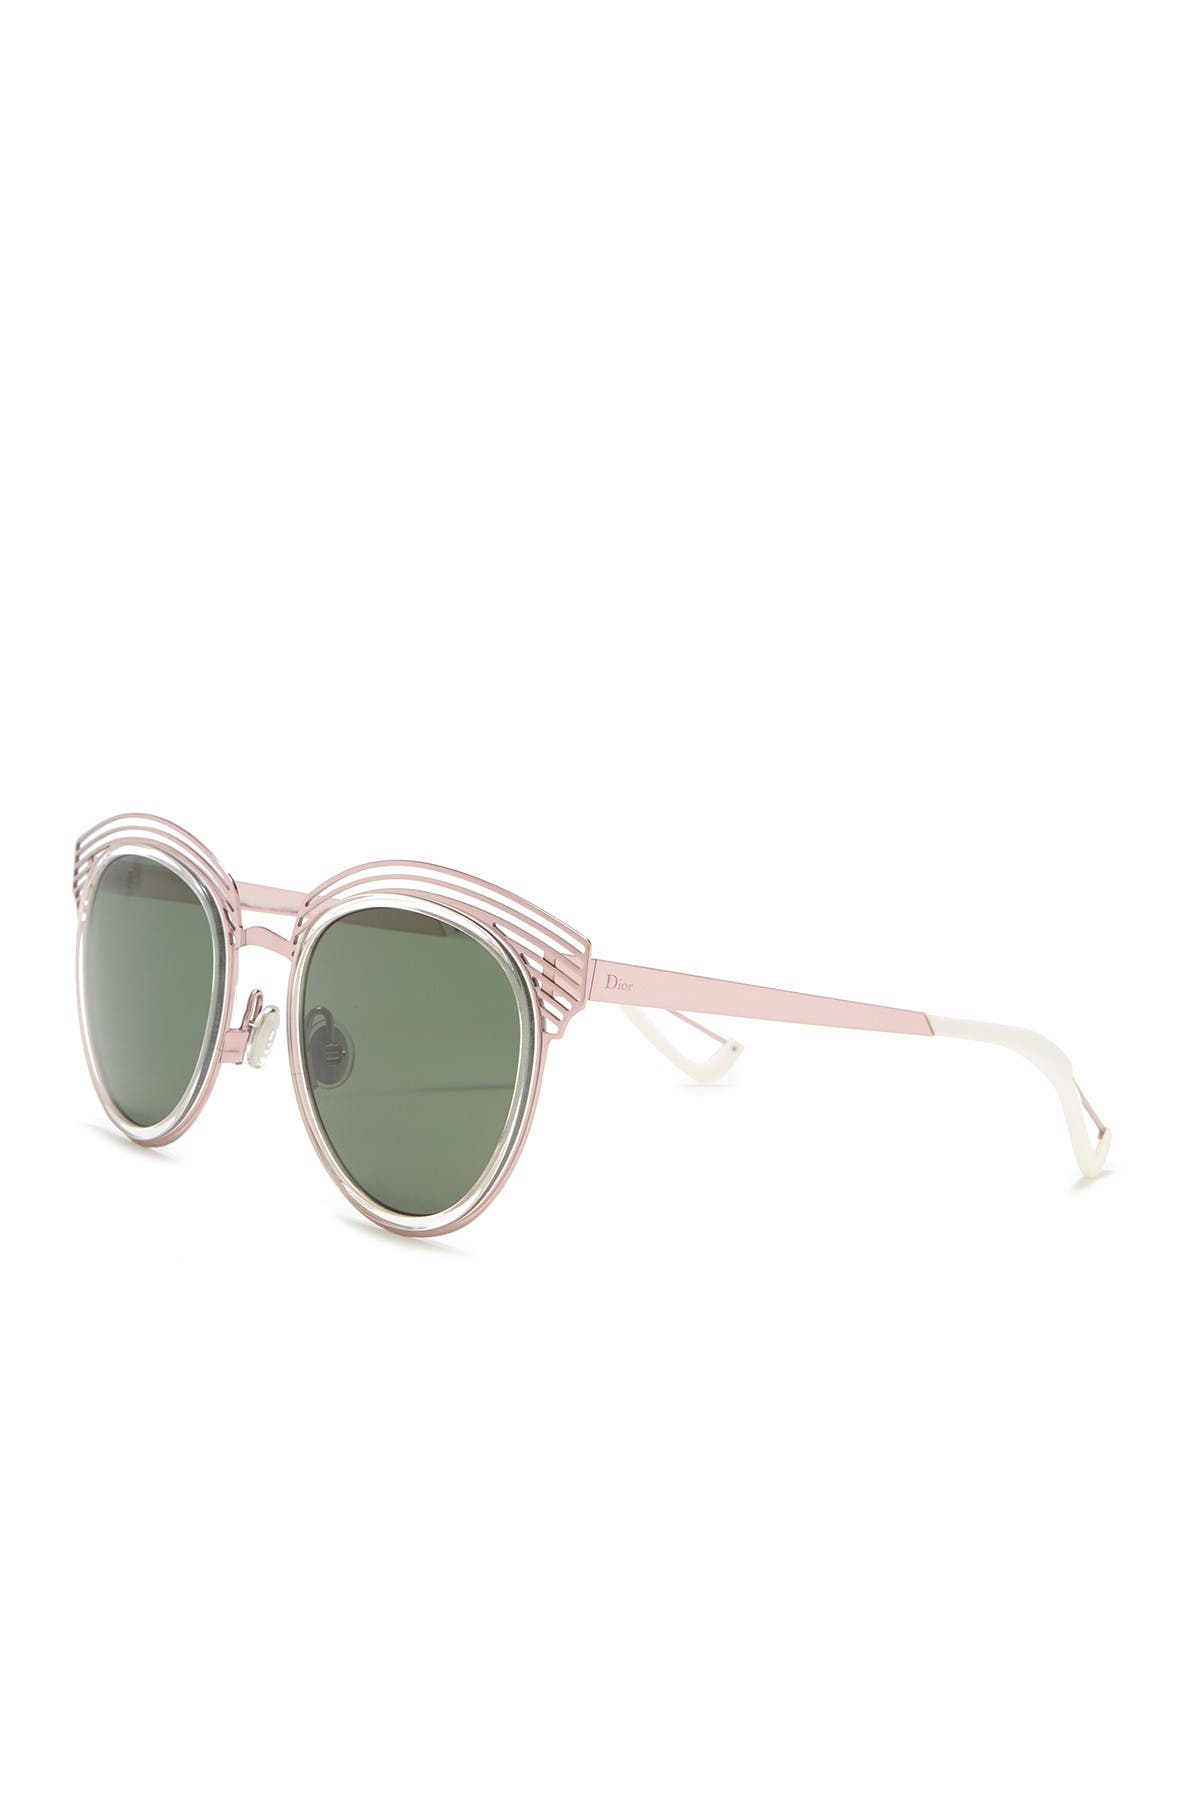 dior clubmaster sunglasses